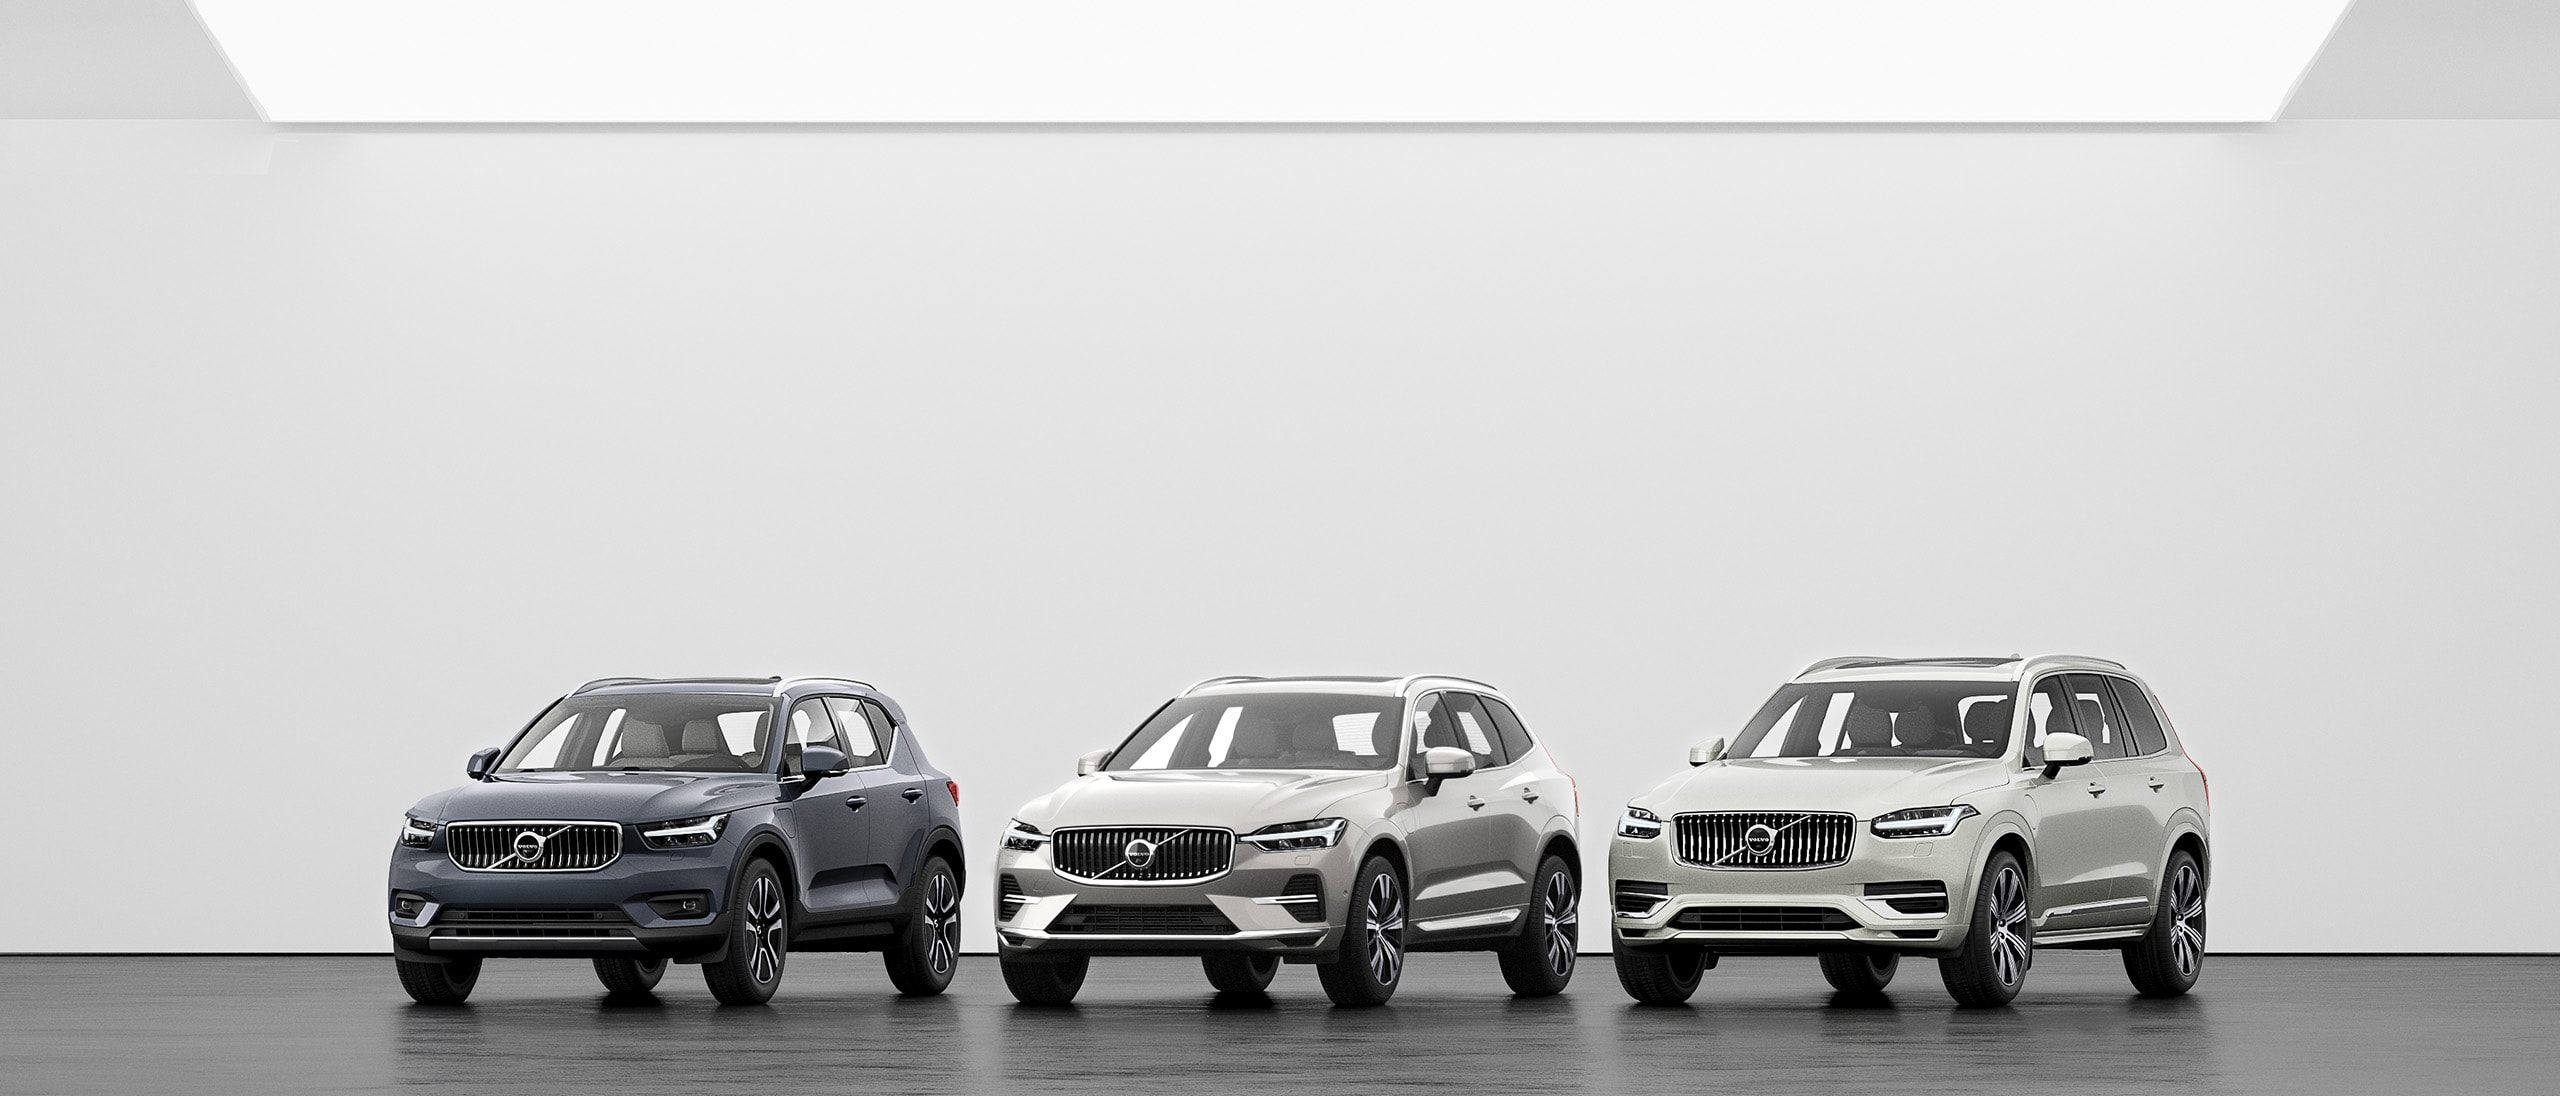 Um conjunto de SUV Volvo, XC40, XC60 e XC90 alinhados num piso cinzento.